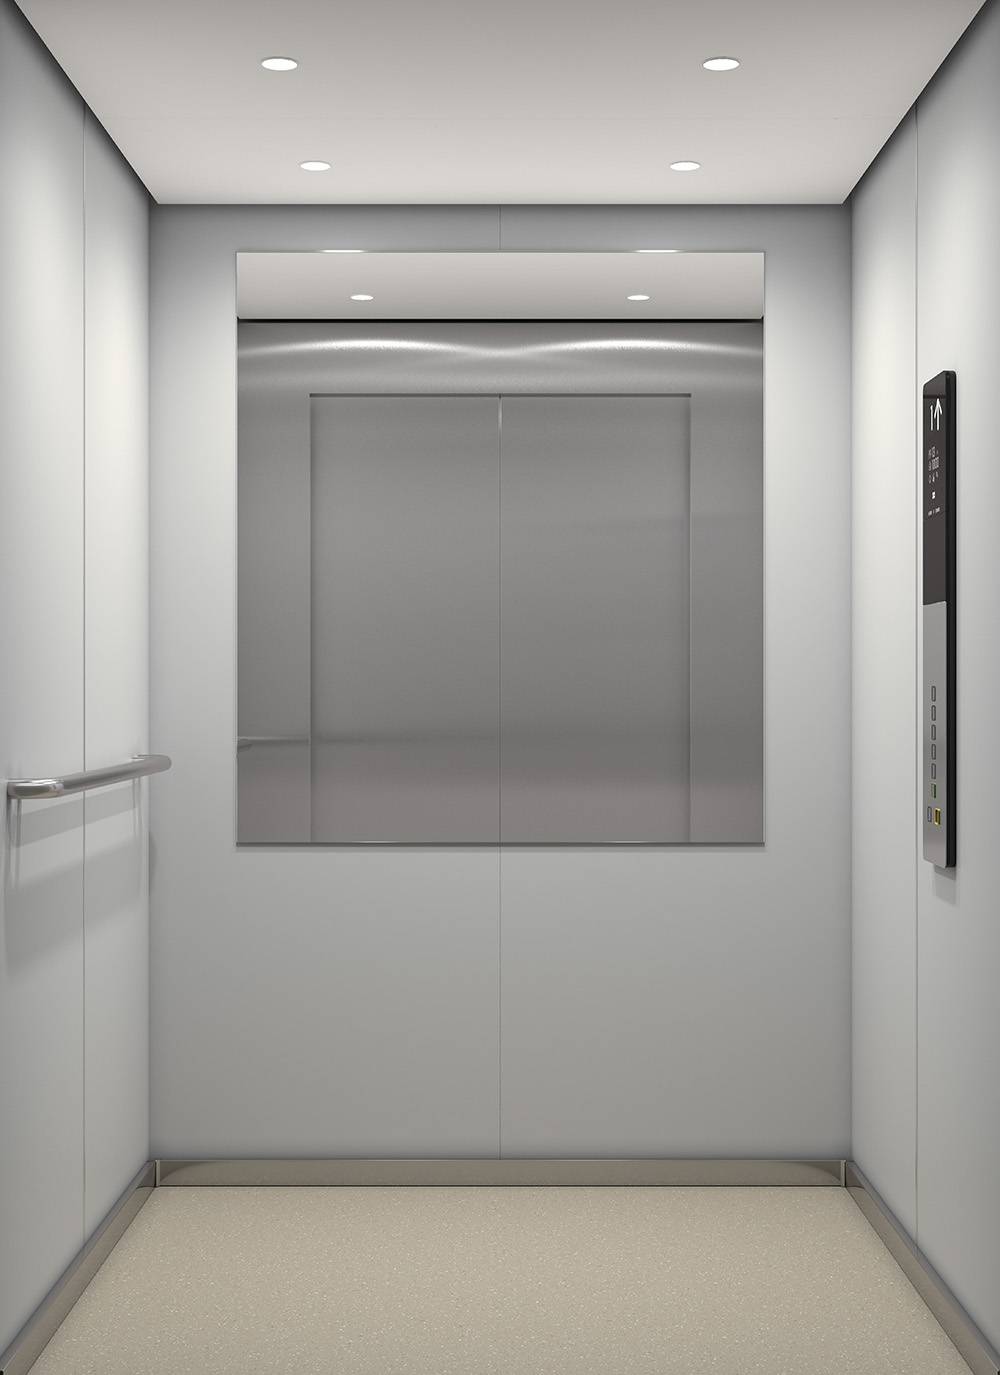 ascensori-kone-monospace-falconi-canton-ticino-7